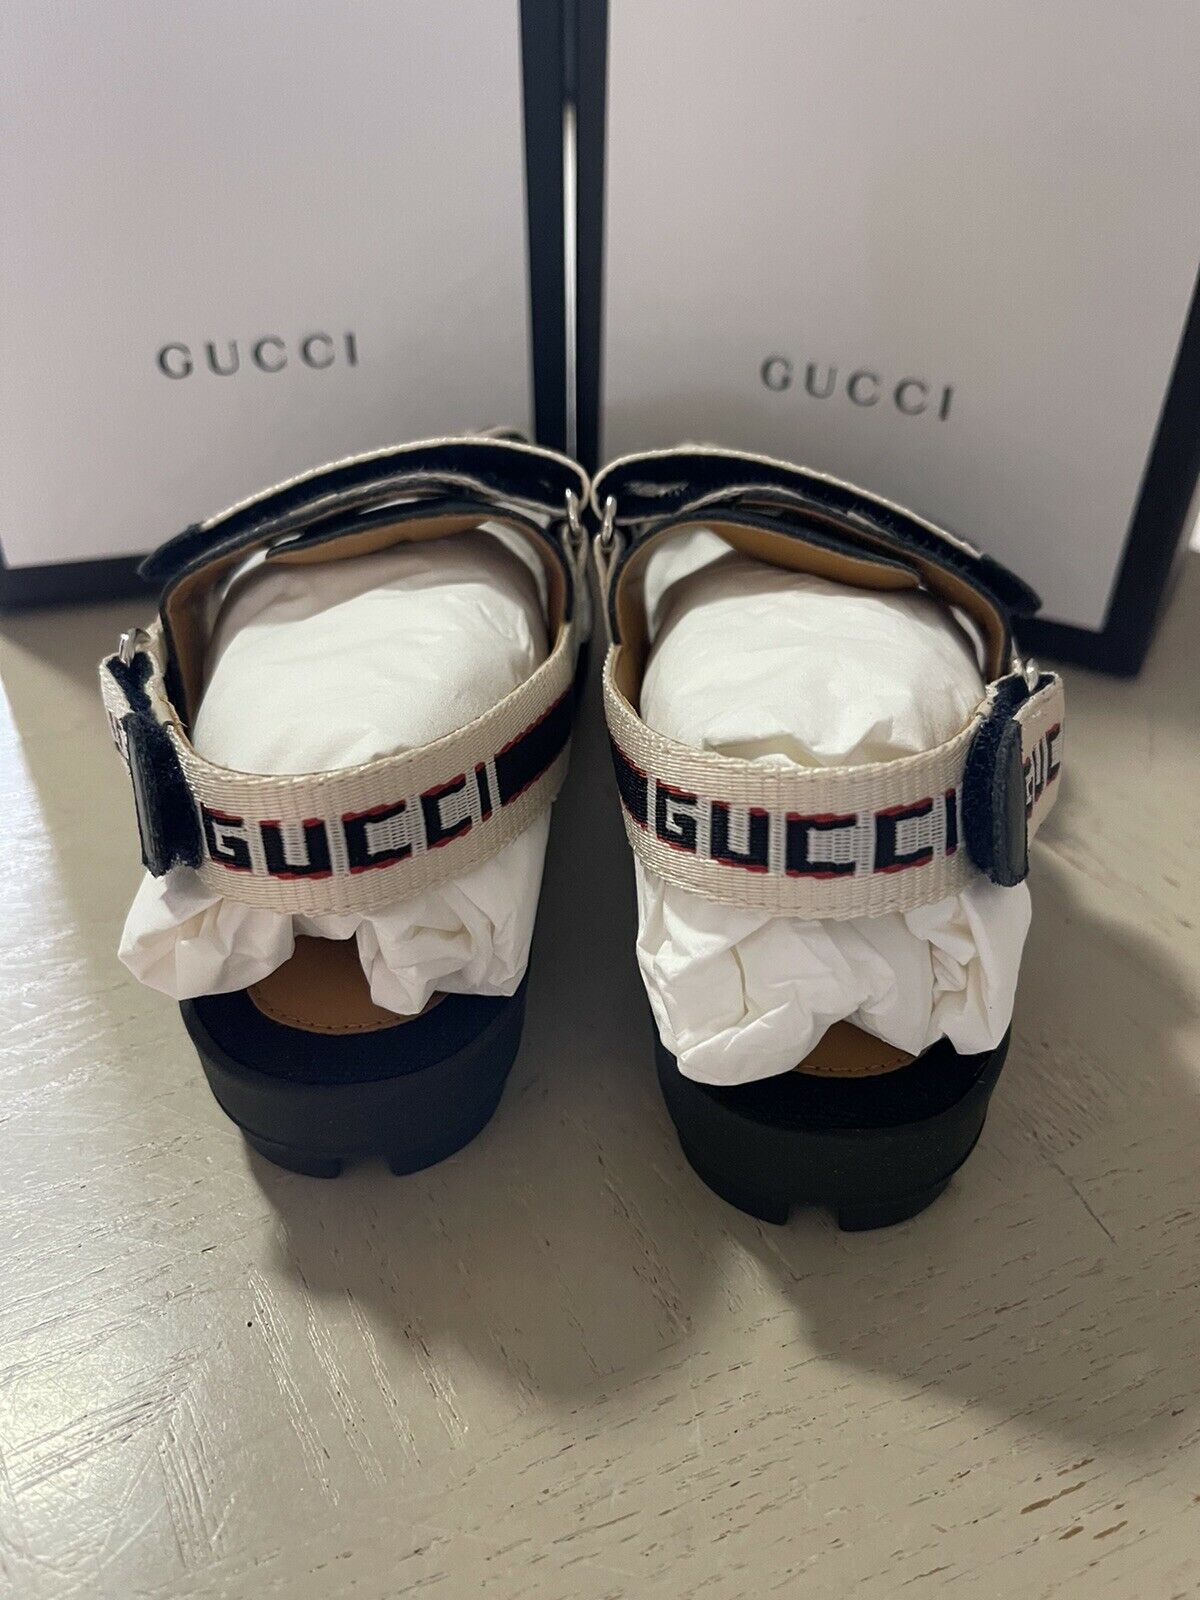 NIB Gucci Детские сандалии из парусины/кожи, черные/белые, размер 30/12, США, возраст 5,5 лет